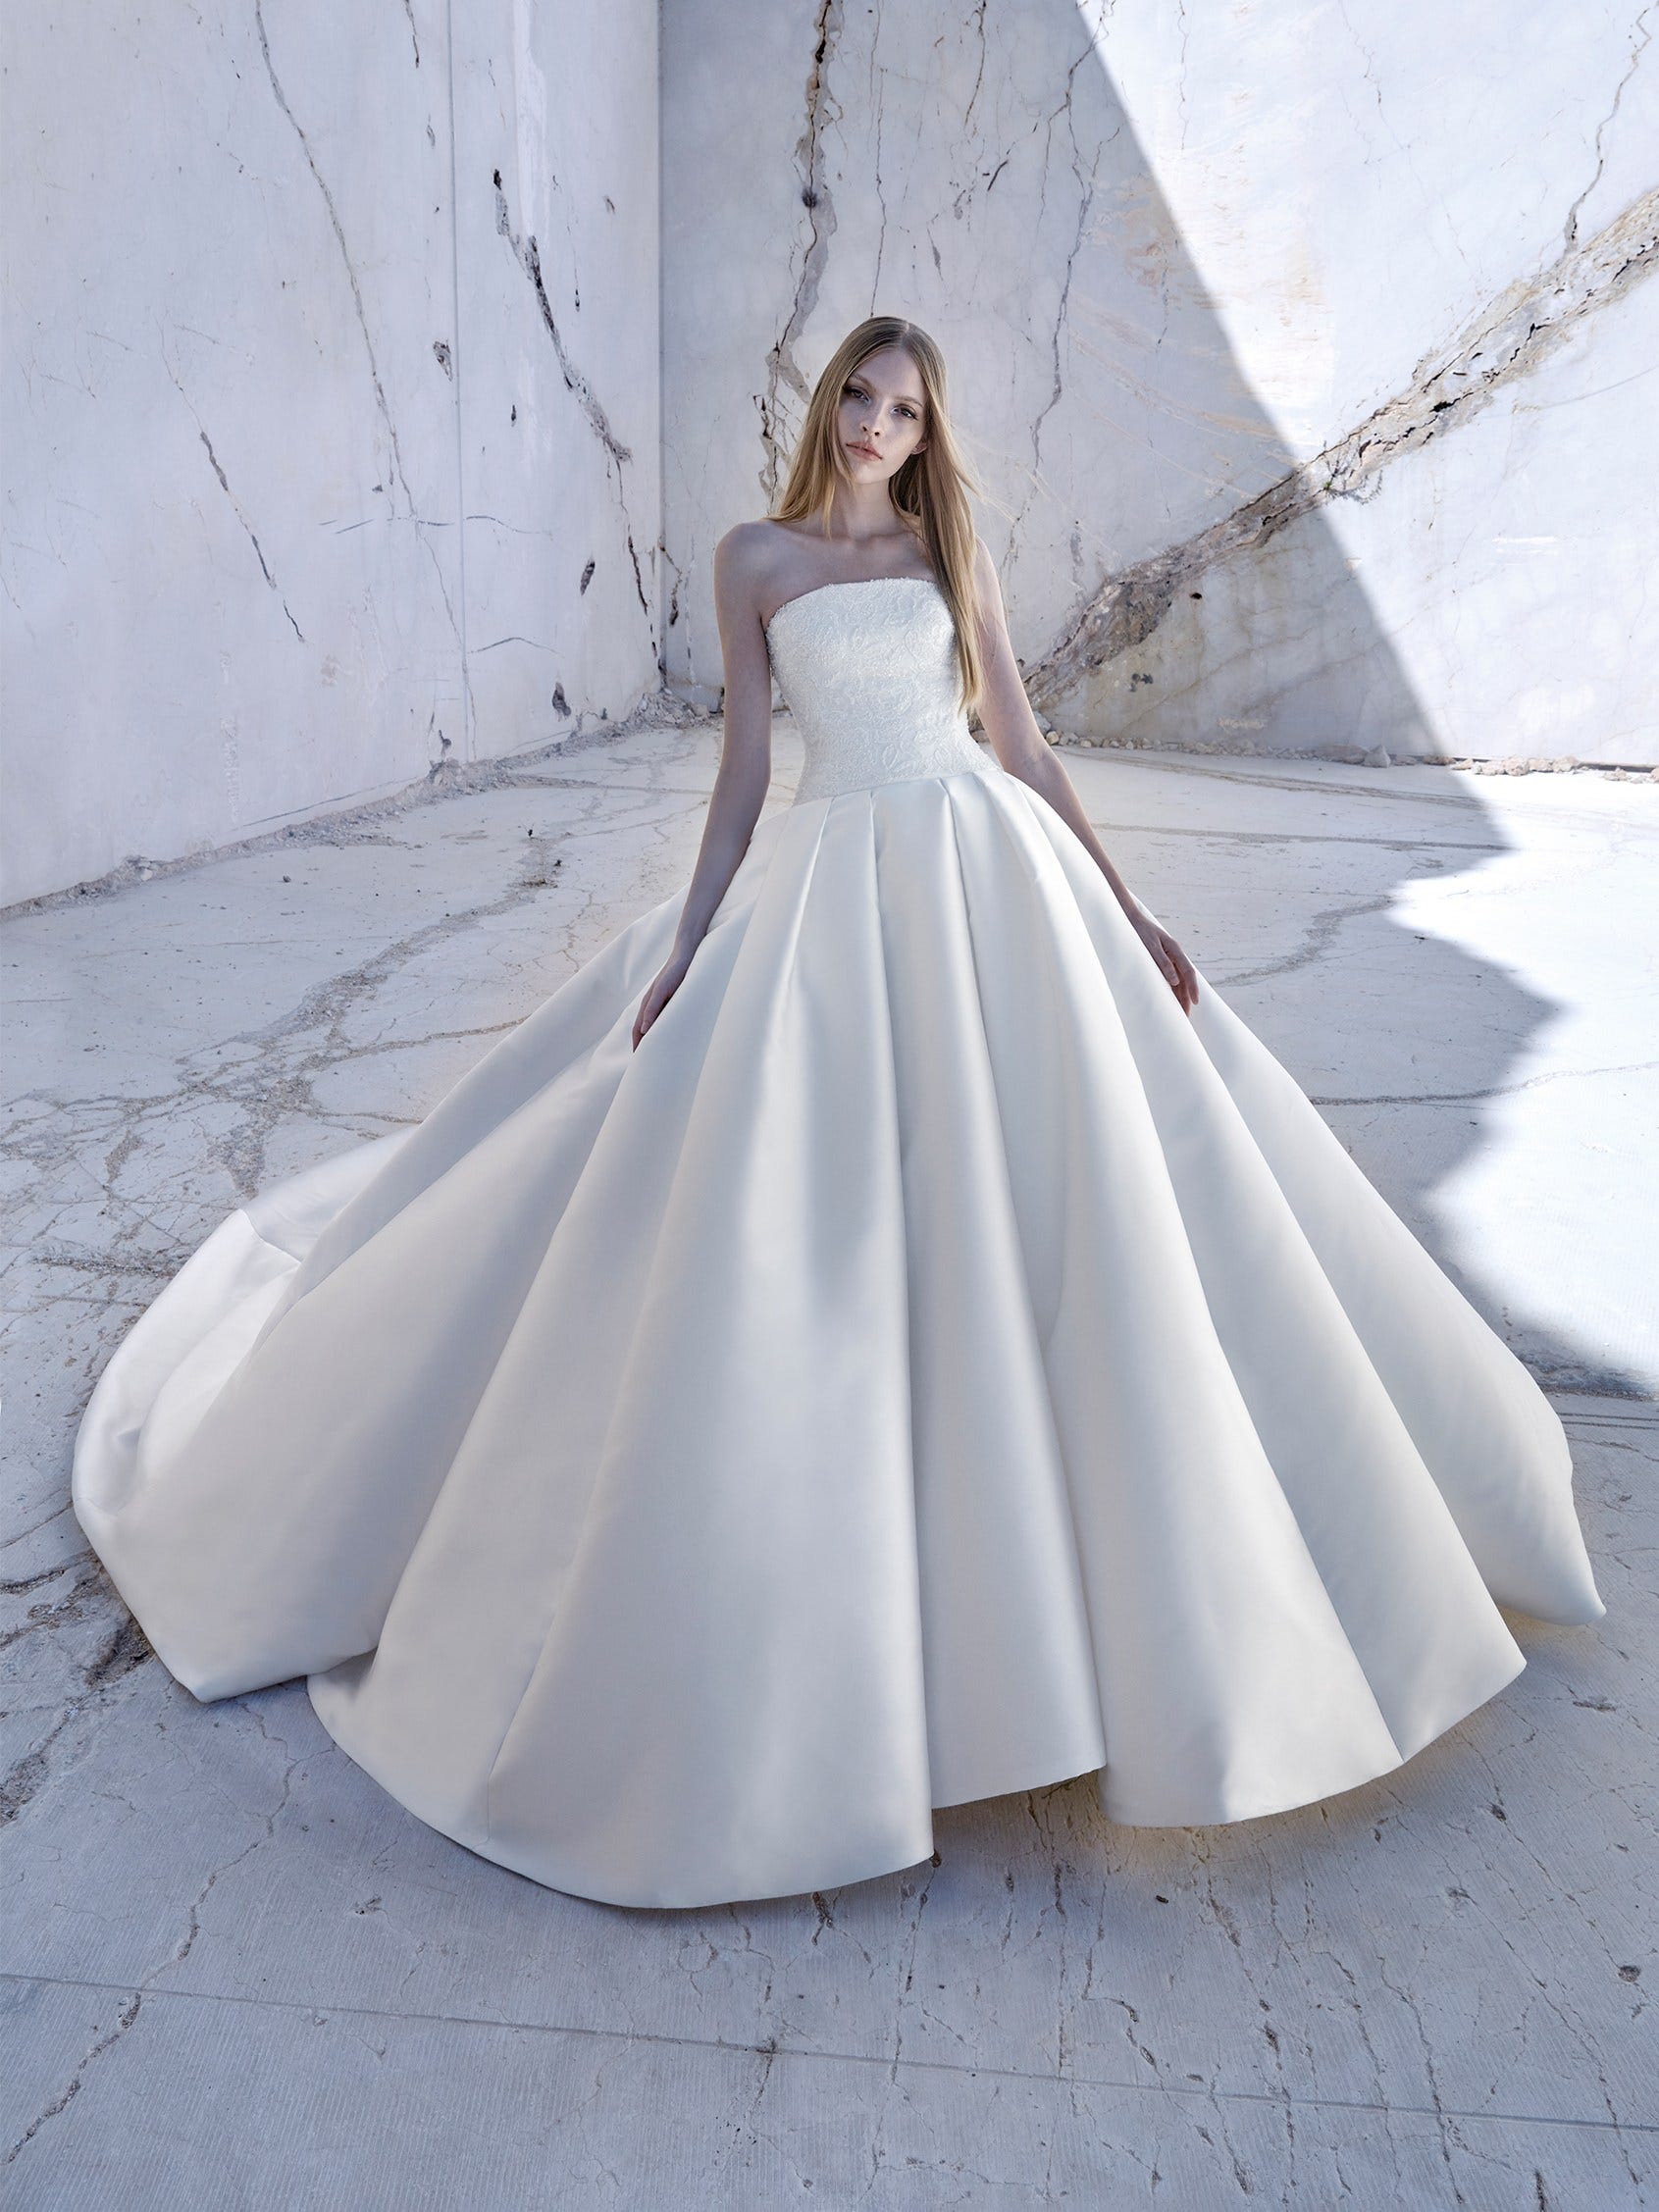 Atelier Pronovias 2424 - Vestido de Novia Fioris: Elegancia Contemporánea en Silueta de Princesa - Detalles Vanguardistas y Versatilidad